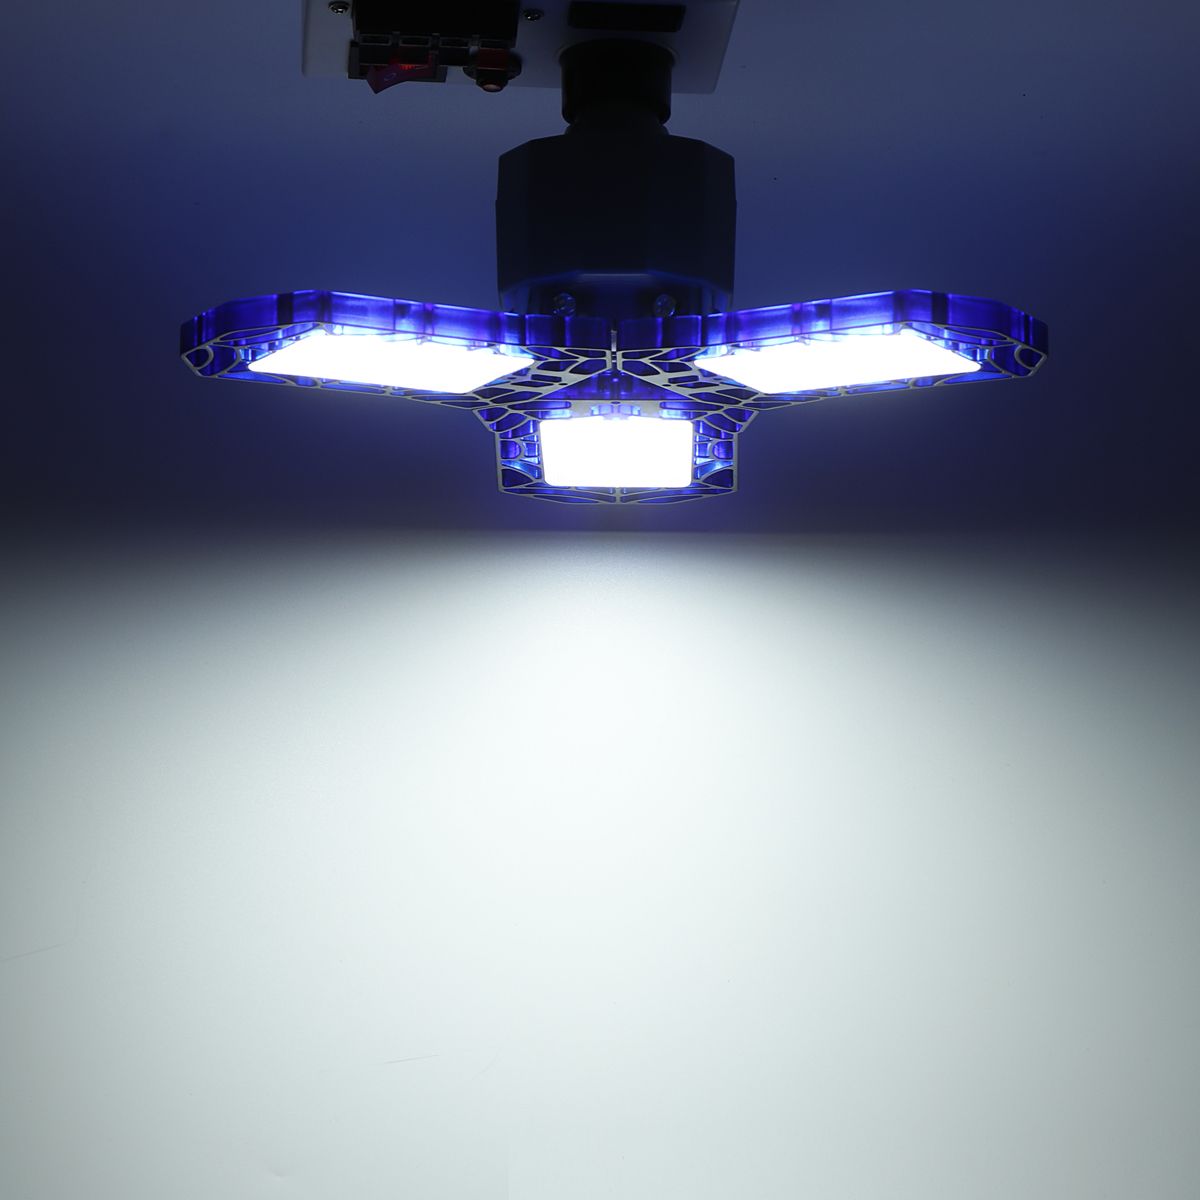 E27-60W-Deformable-LED-Garage-Light-Foldable-Ceiling-Lighting-High-Bay-Light-Lamp-AC85-265V-1732647